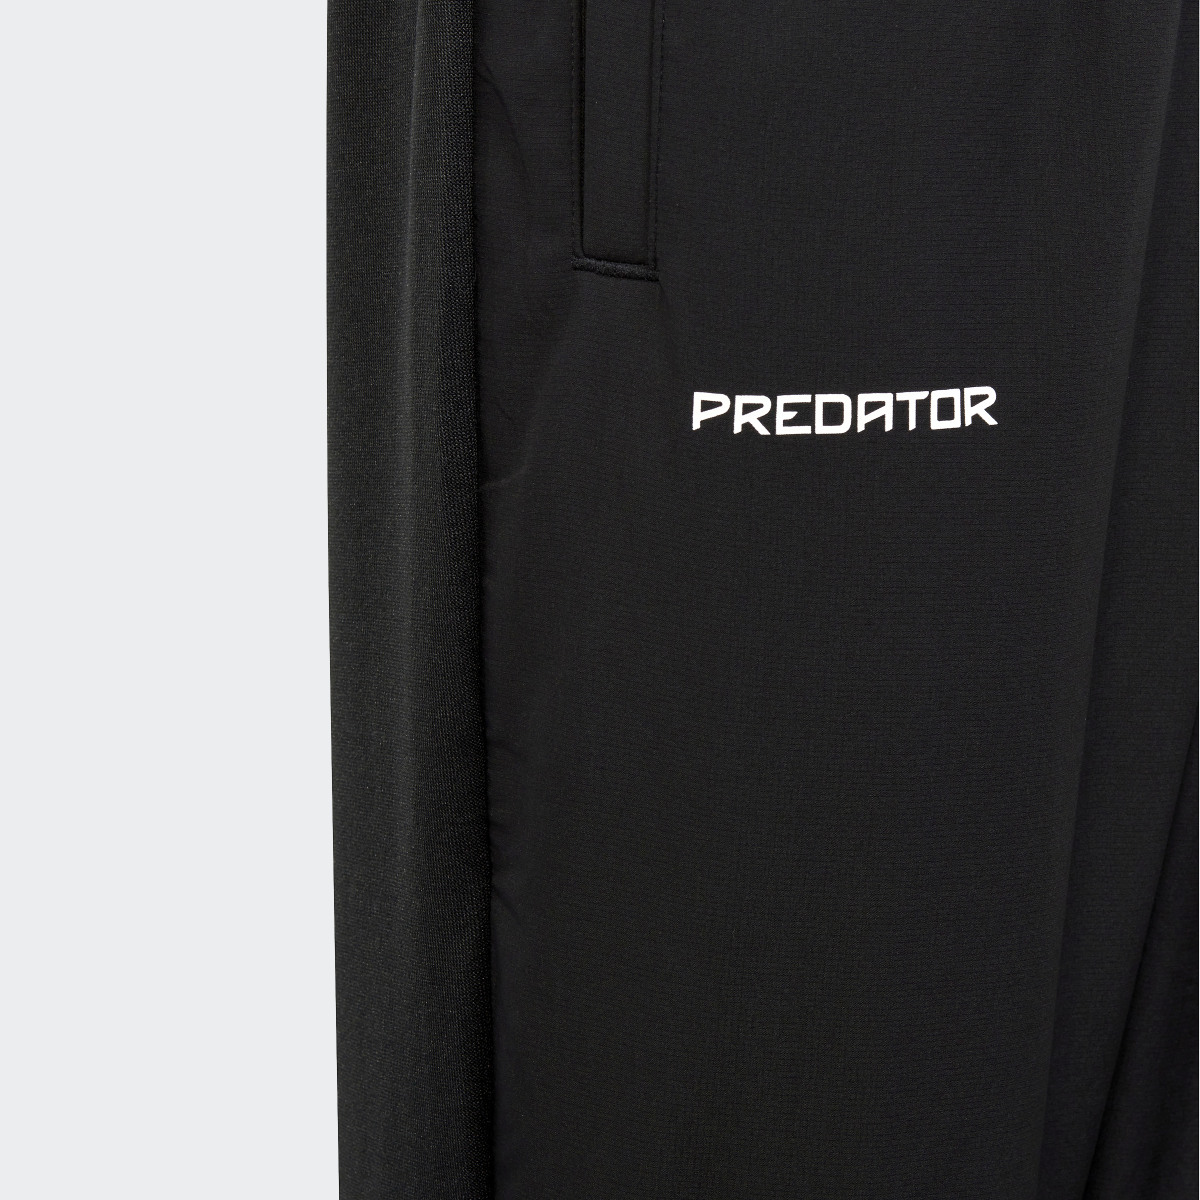 Adidas Predator Pants. 7